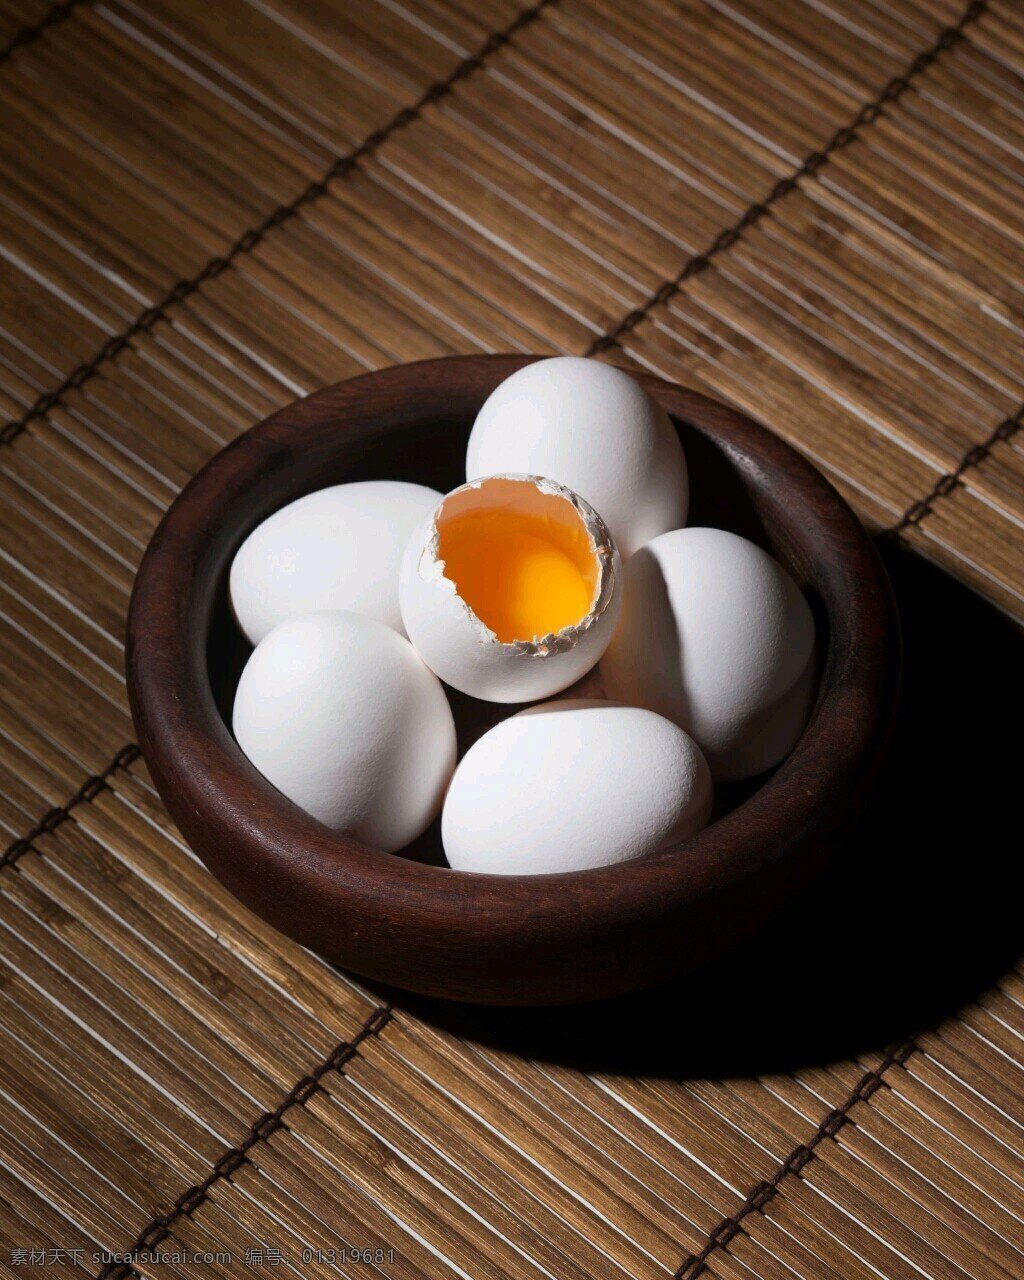 蛋 鸡蛋 彩蛋 鸭蛋 鹅蛋 小鸡蛋 草鸡蛋 鸽子蛋 鸟蛋 美食 餐饮美食 传统美食